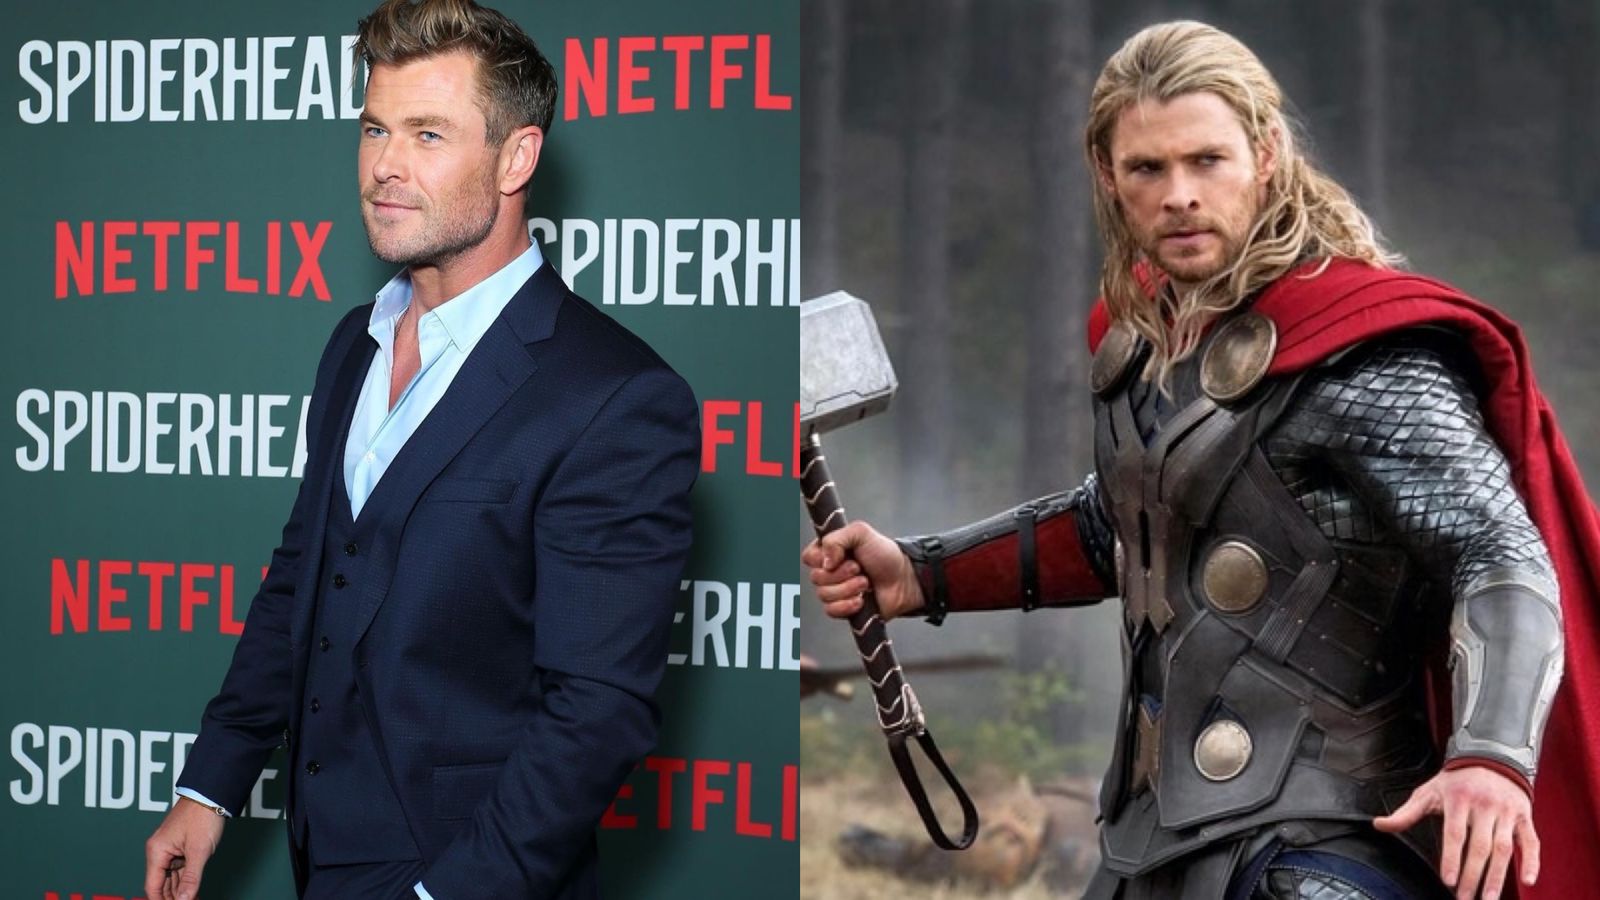 Chris Hemsworth, astro de Thor, revela que tem predisposição para